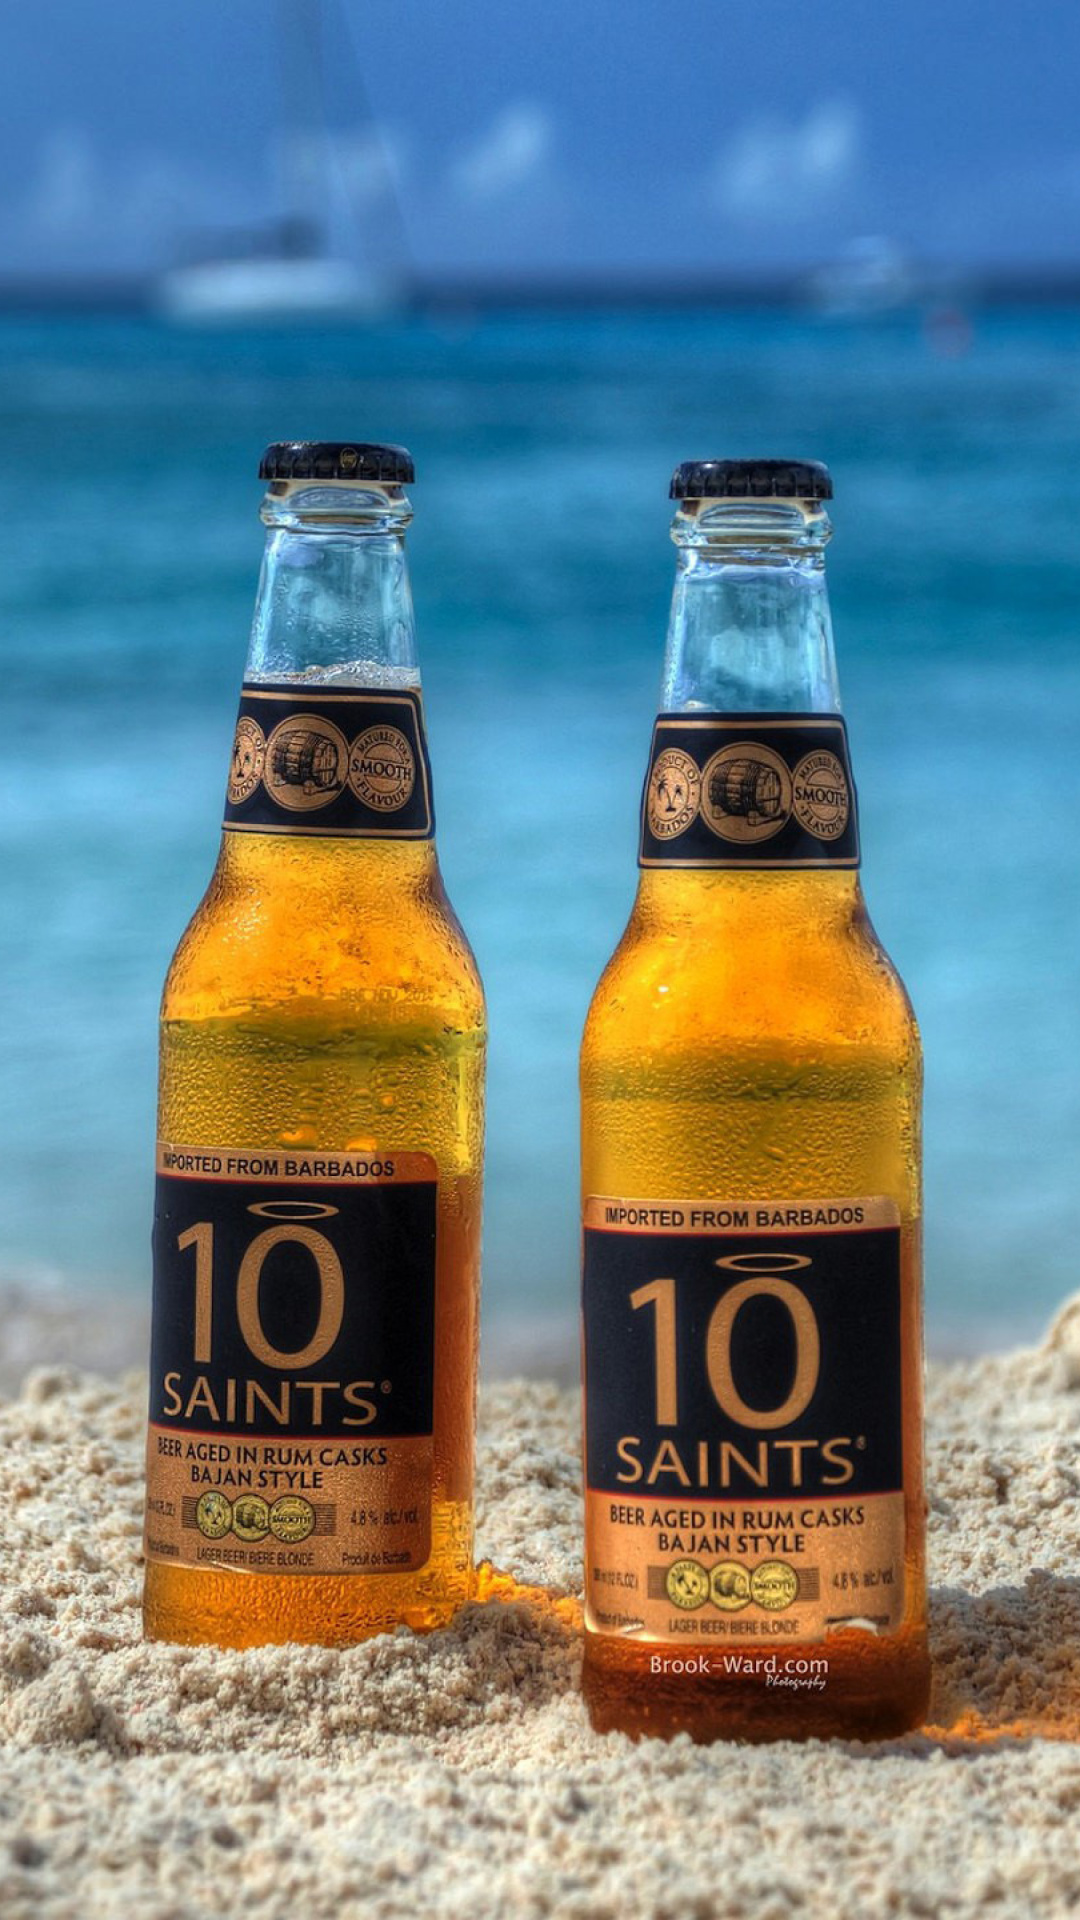 10 Saints Beer wallpaper 1080x1920